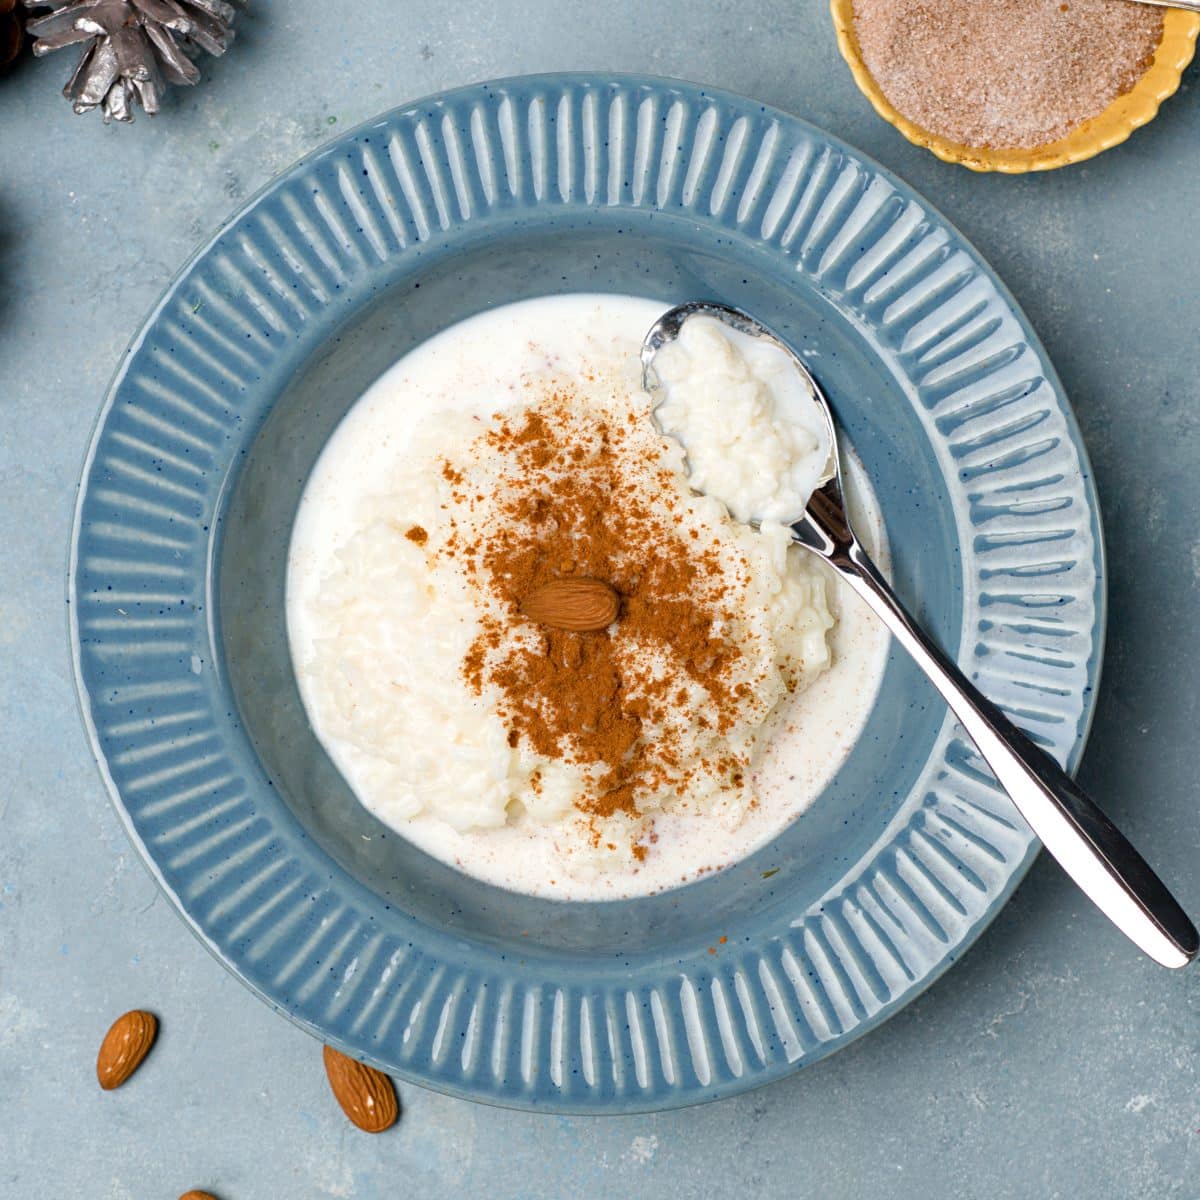 Finnish rice porridge - Scandicuisine